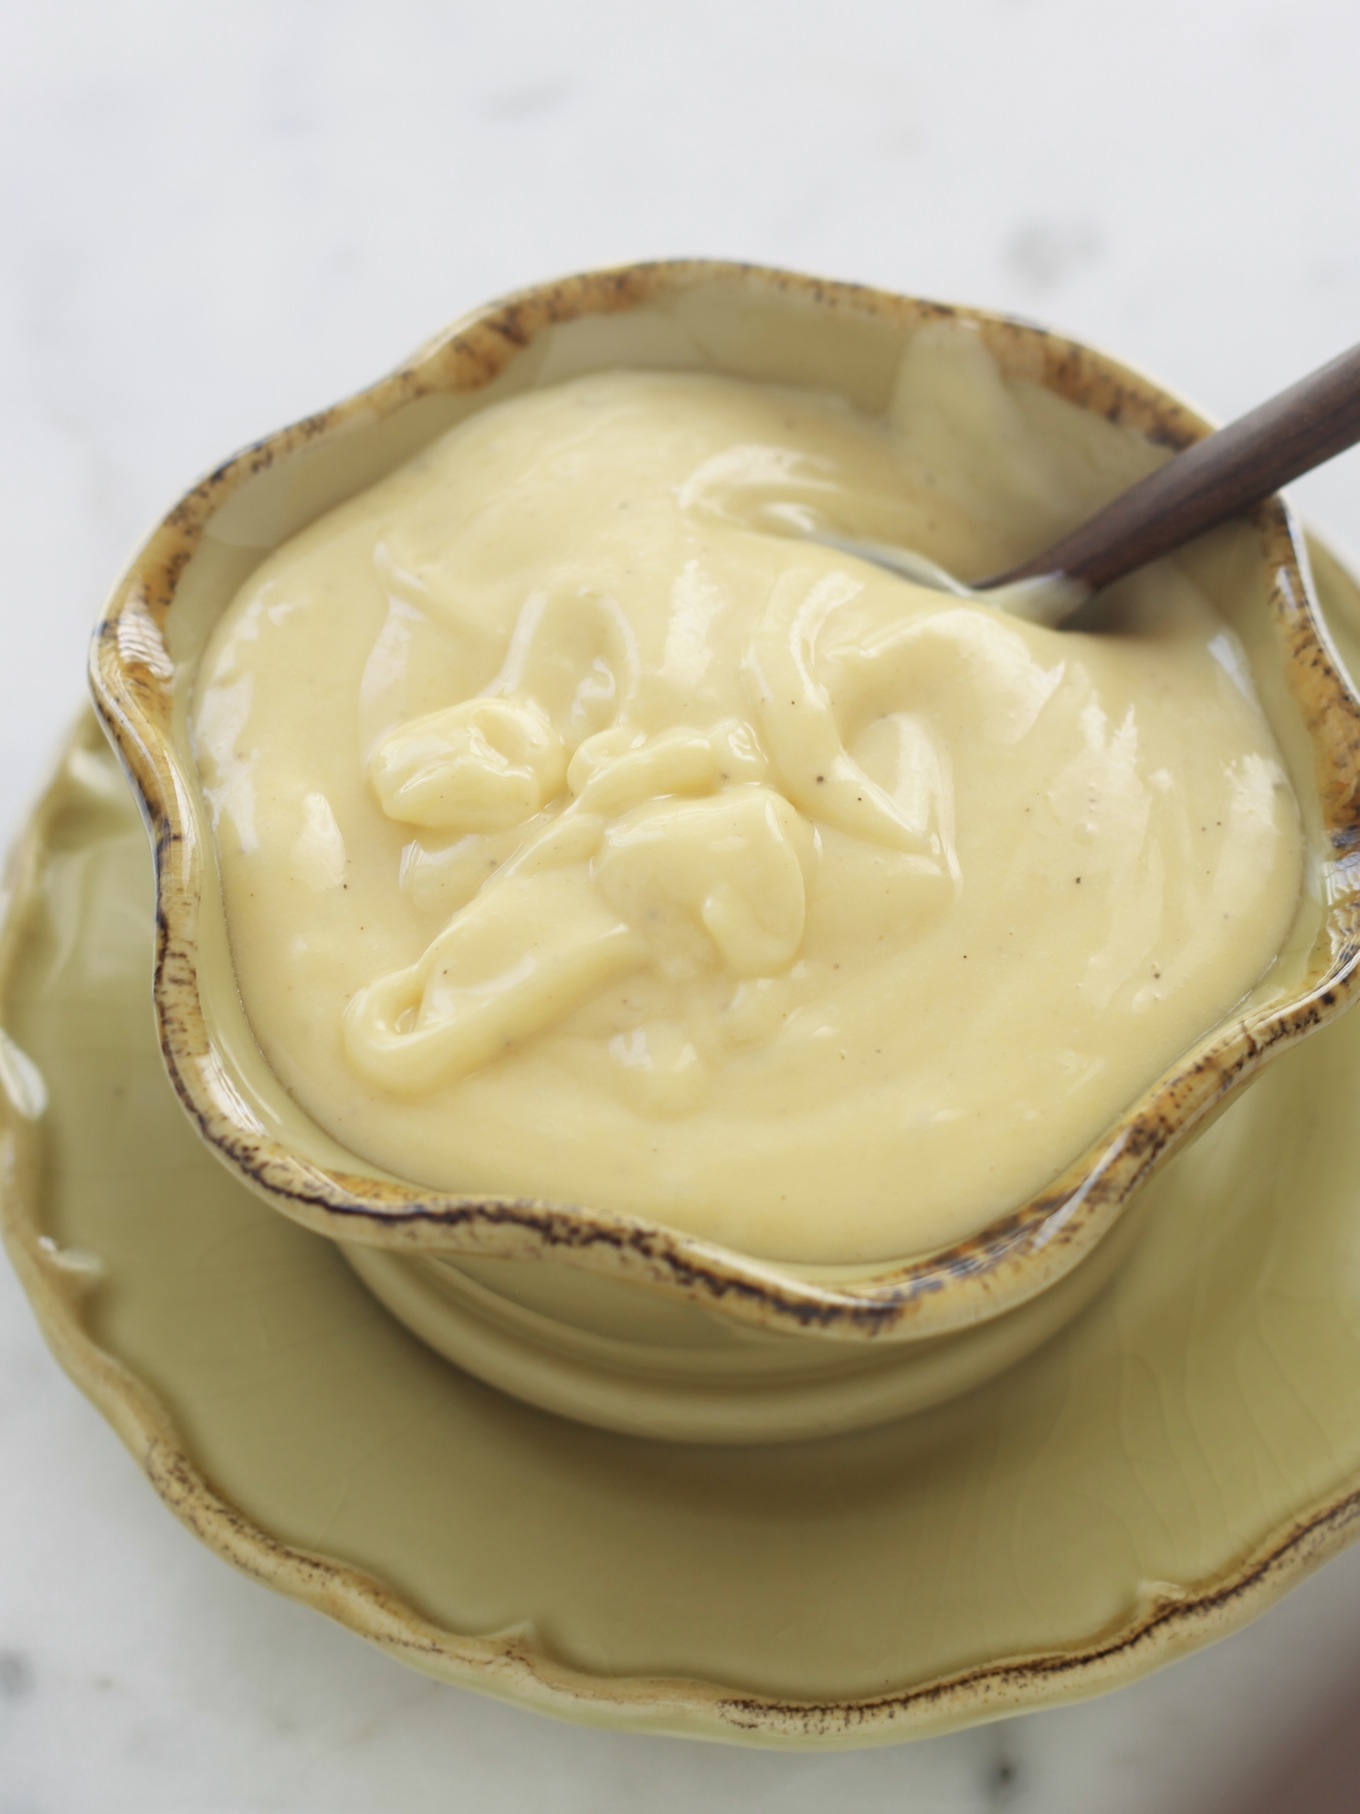 La mayonnaise maison est très facile à faire, c'est meilleur en goût, et surtout 100 % naturelle, sans additifs, sans conservateurs et sans colorants. / cuisineculinaire.com